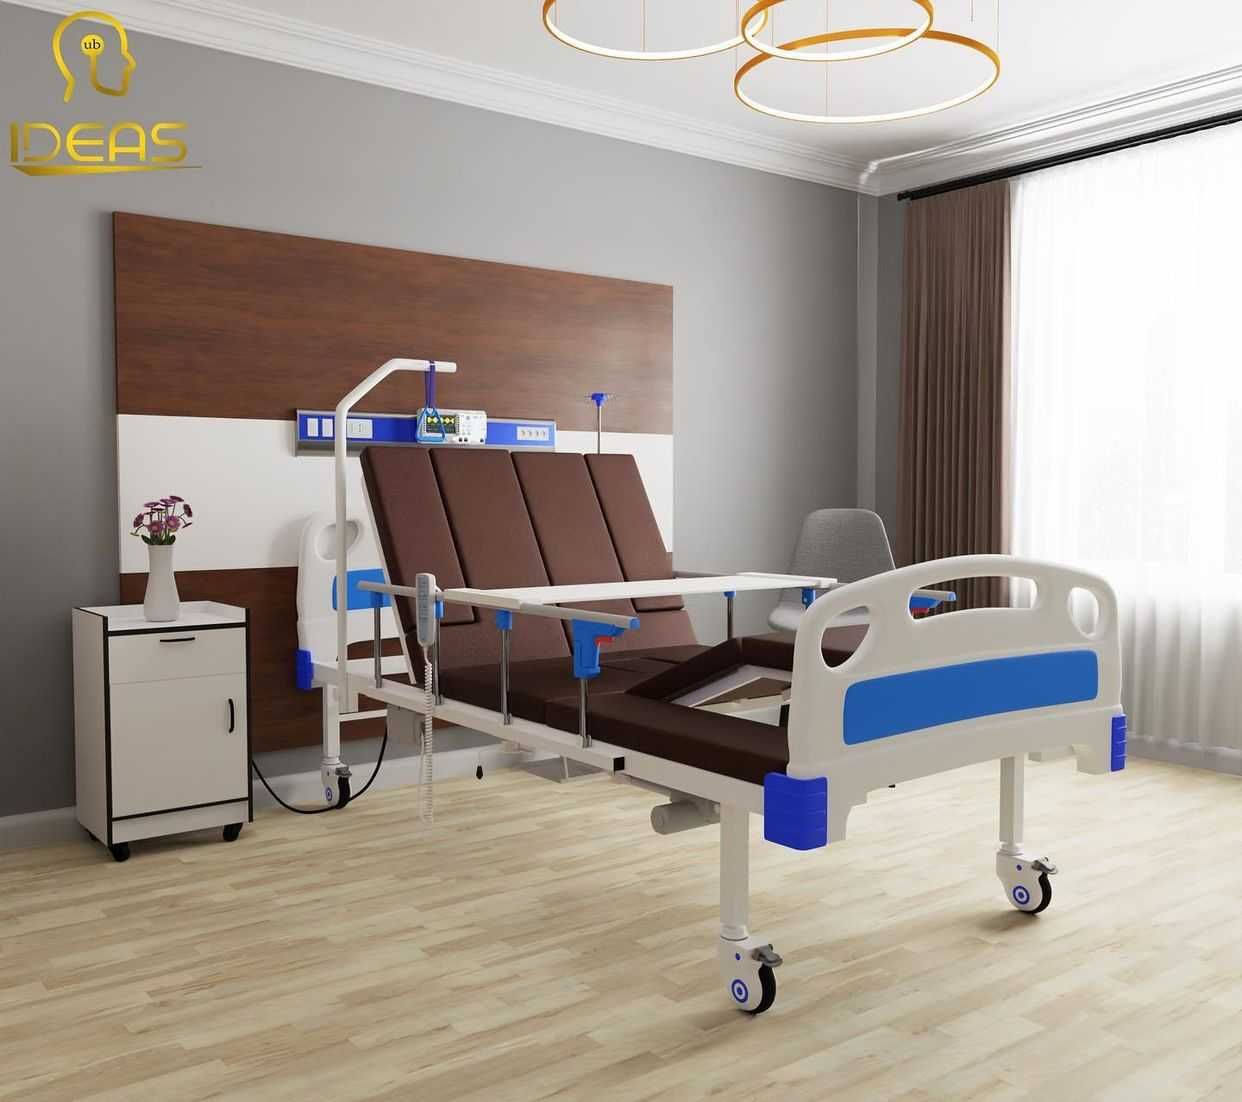 Кровать для заботы пациентов многофункциональная электрическая